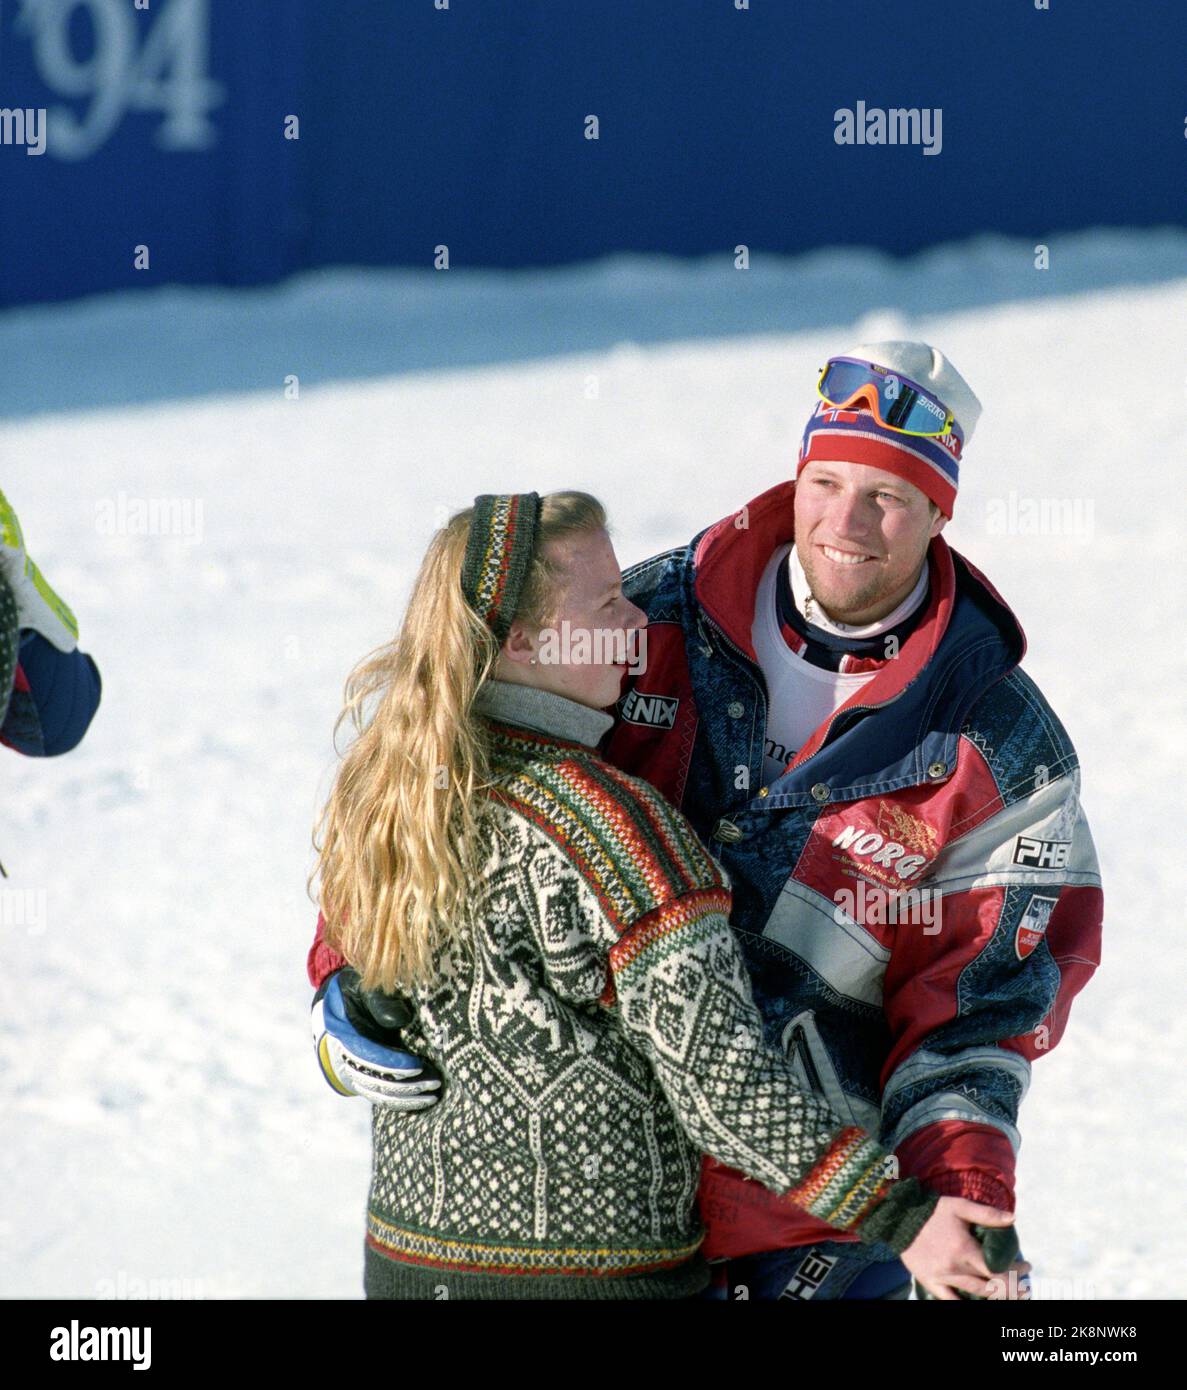 Hafjell 19940225. Le Olimpiadi invernali a Lillehammer Norvegia prendono oro, argento e bronzo nella combinazione alpina. Lasse Kjus danze vittoria danza con una delle ragazze fiore dopo il suo primo posto su Hafjell. Foto: Calle Törnström / NTB Foto Stock